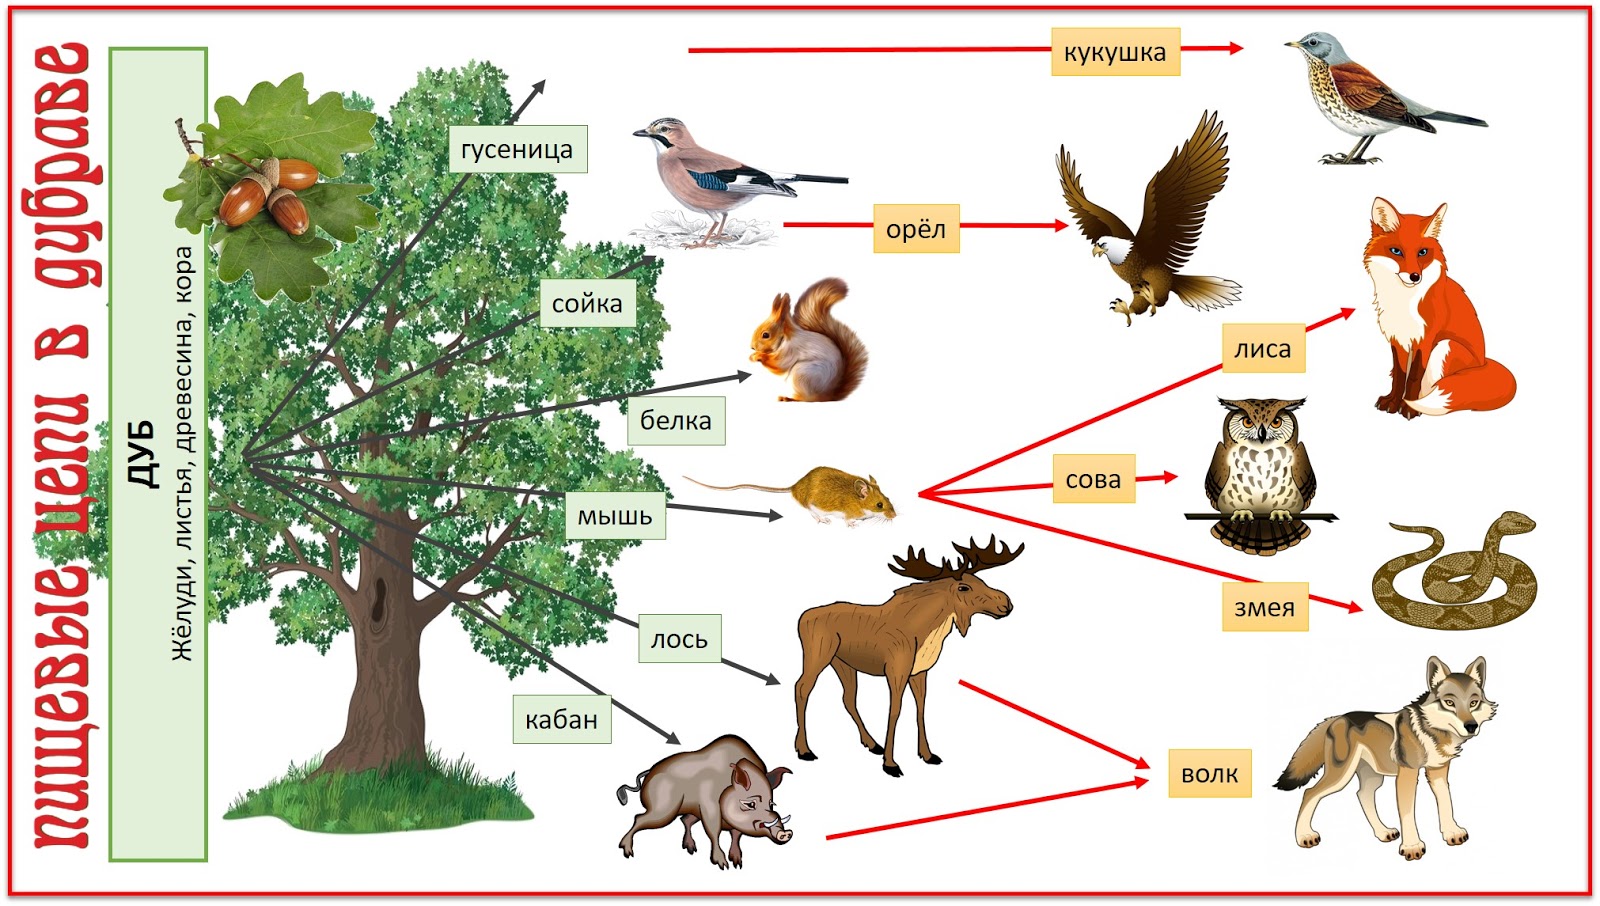 Кроссворд взаимосвязь организмов в природном сообществе. Пищевая связь в Лесном сообществе. Цепь питания в лесу. Цепочка питания живых организмов. Цепь питания лесных обитателей.